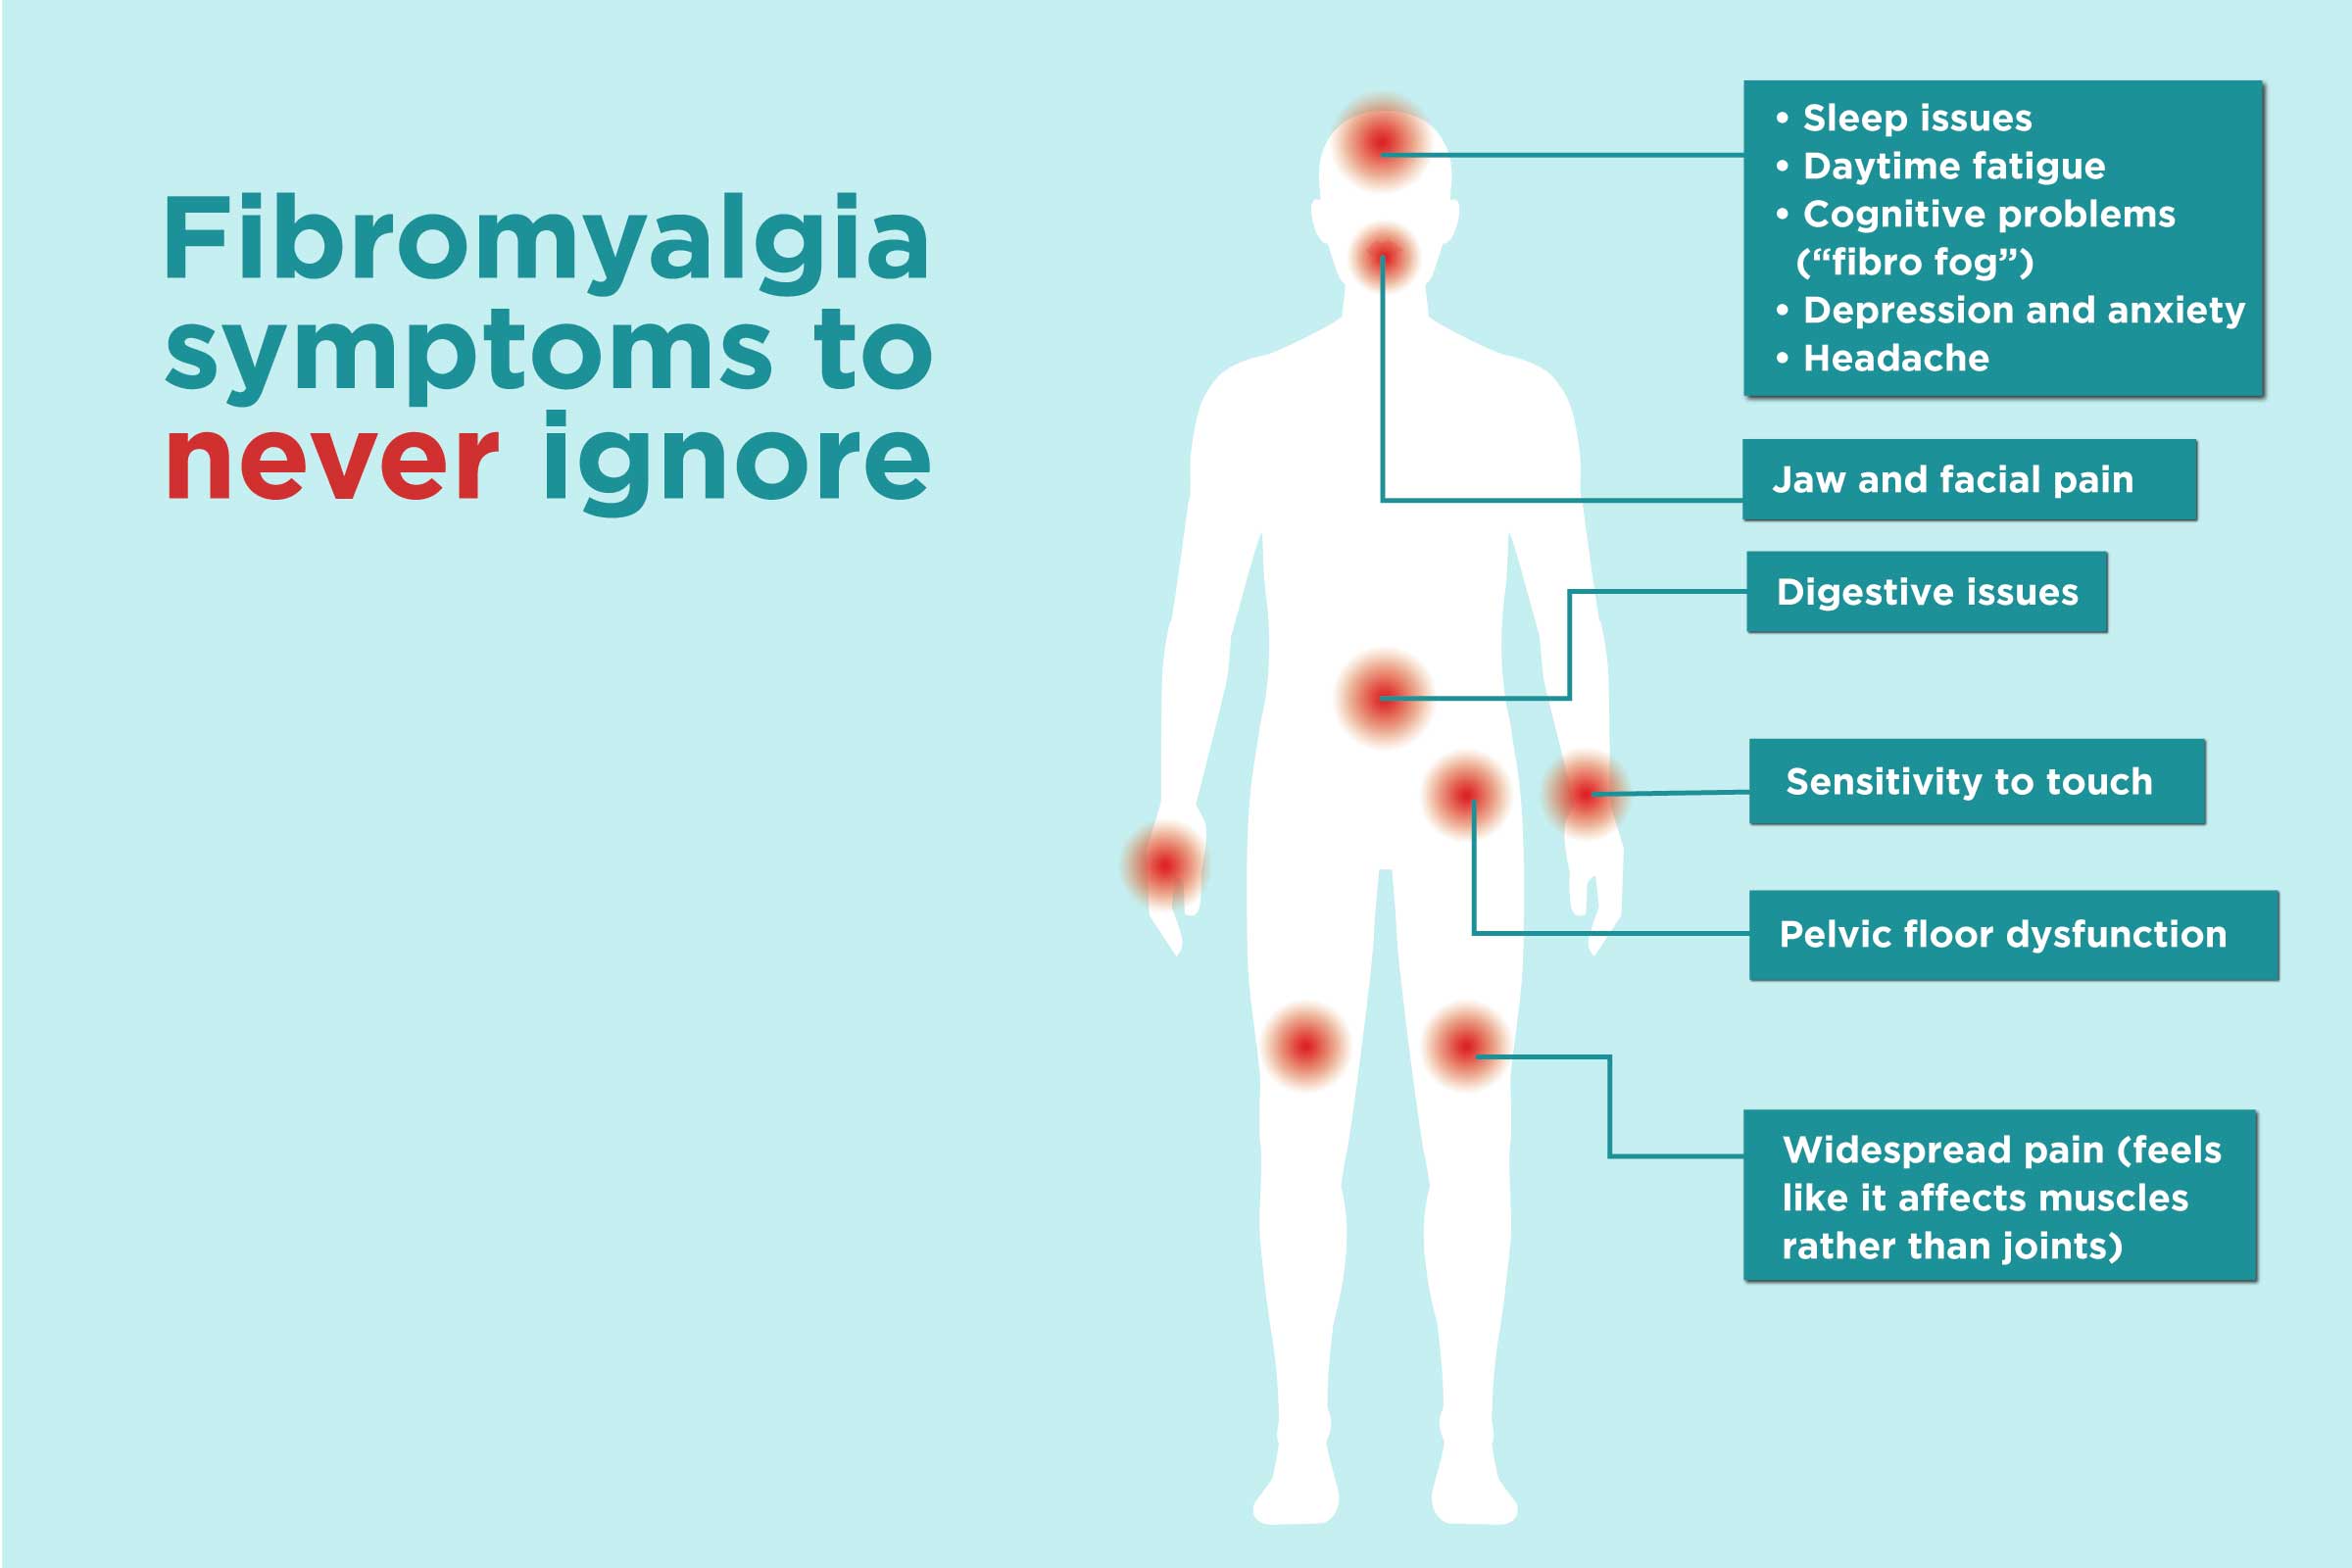 Treatment Approaches for Fibromyalgia